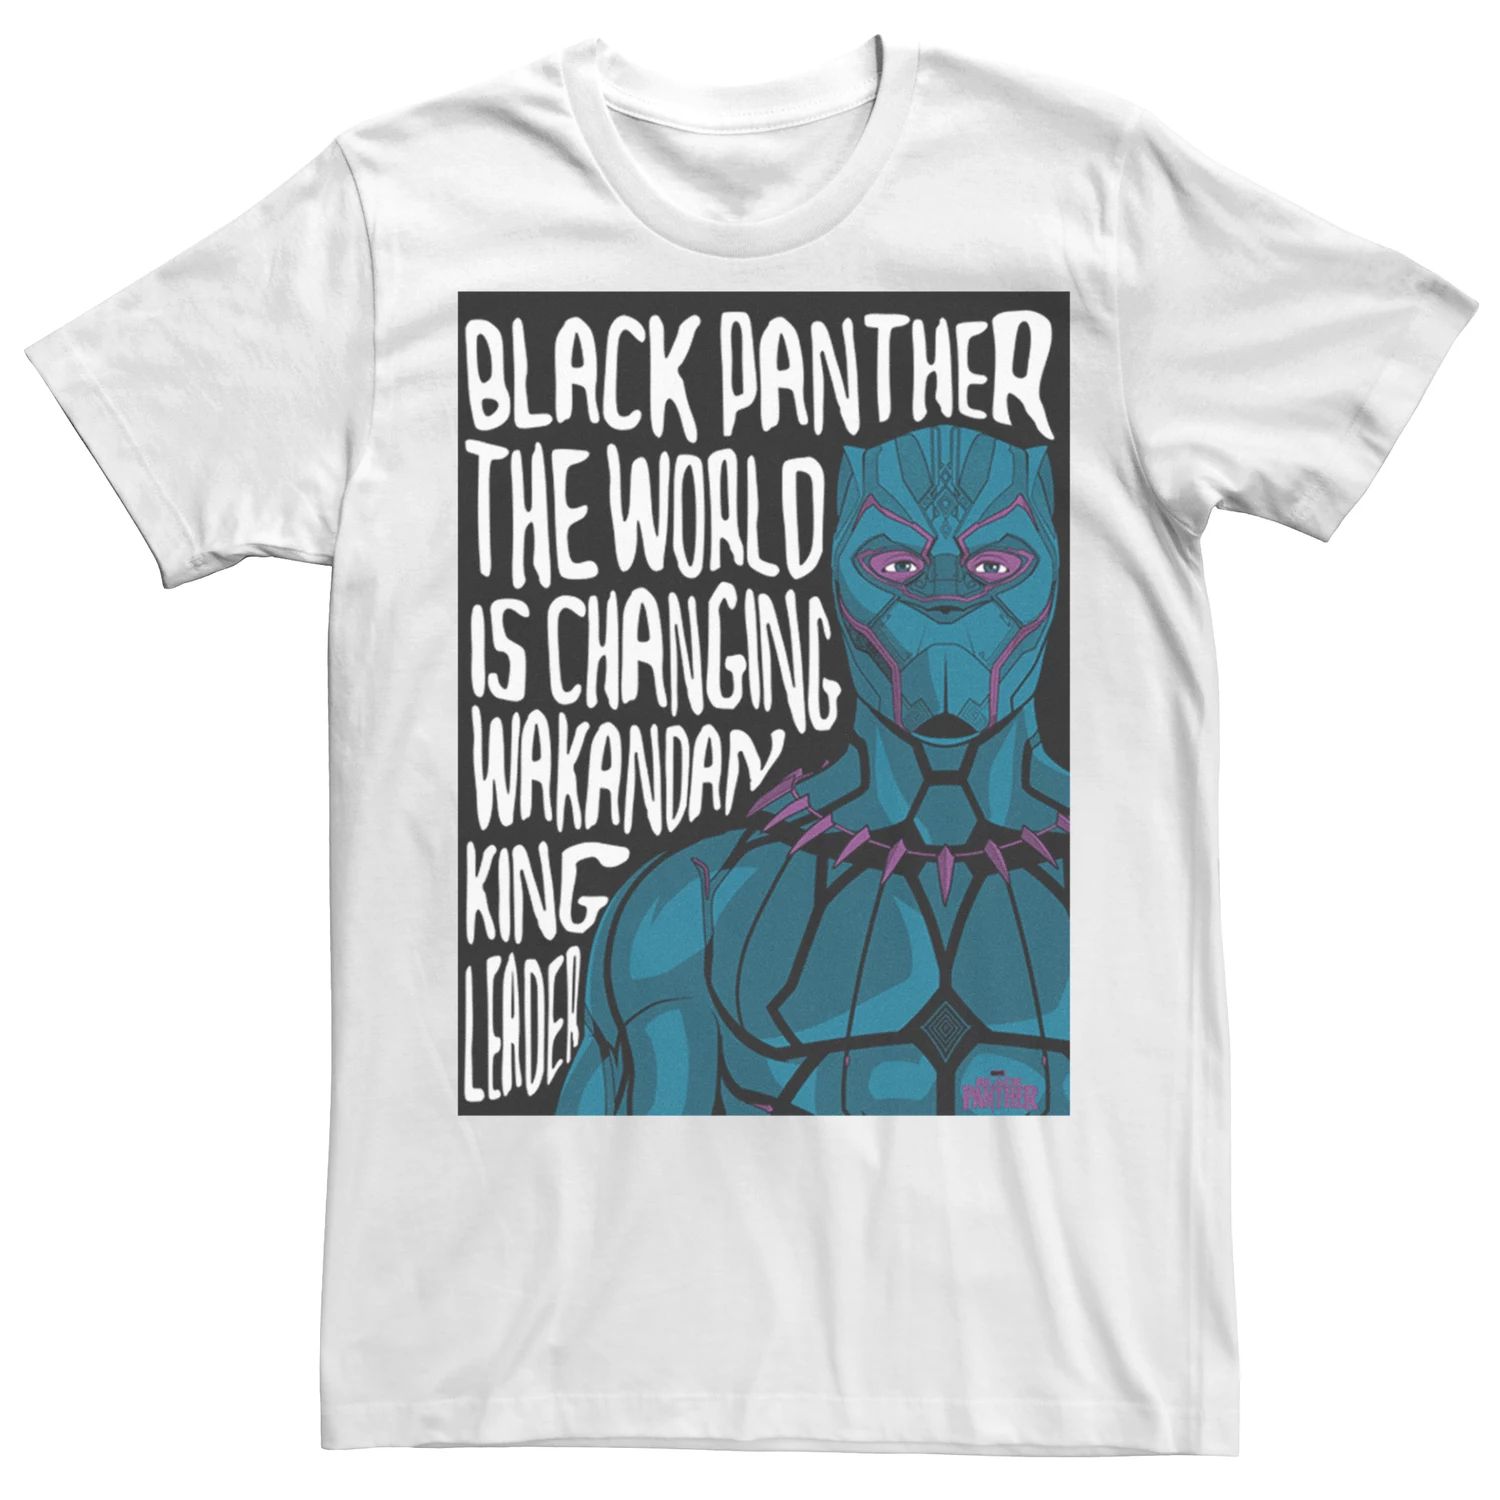 Мужская футболка с рисунком Marvel Black Panther Changeing World Licensed Character